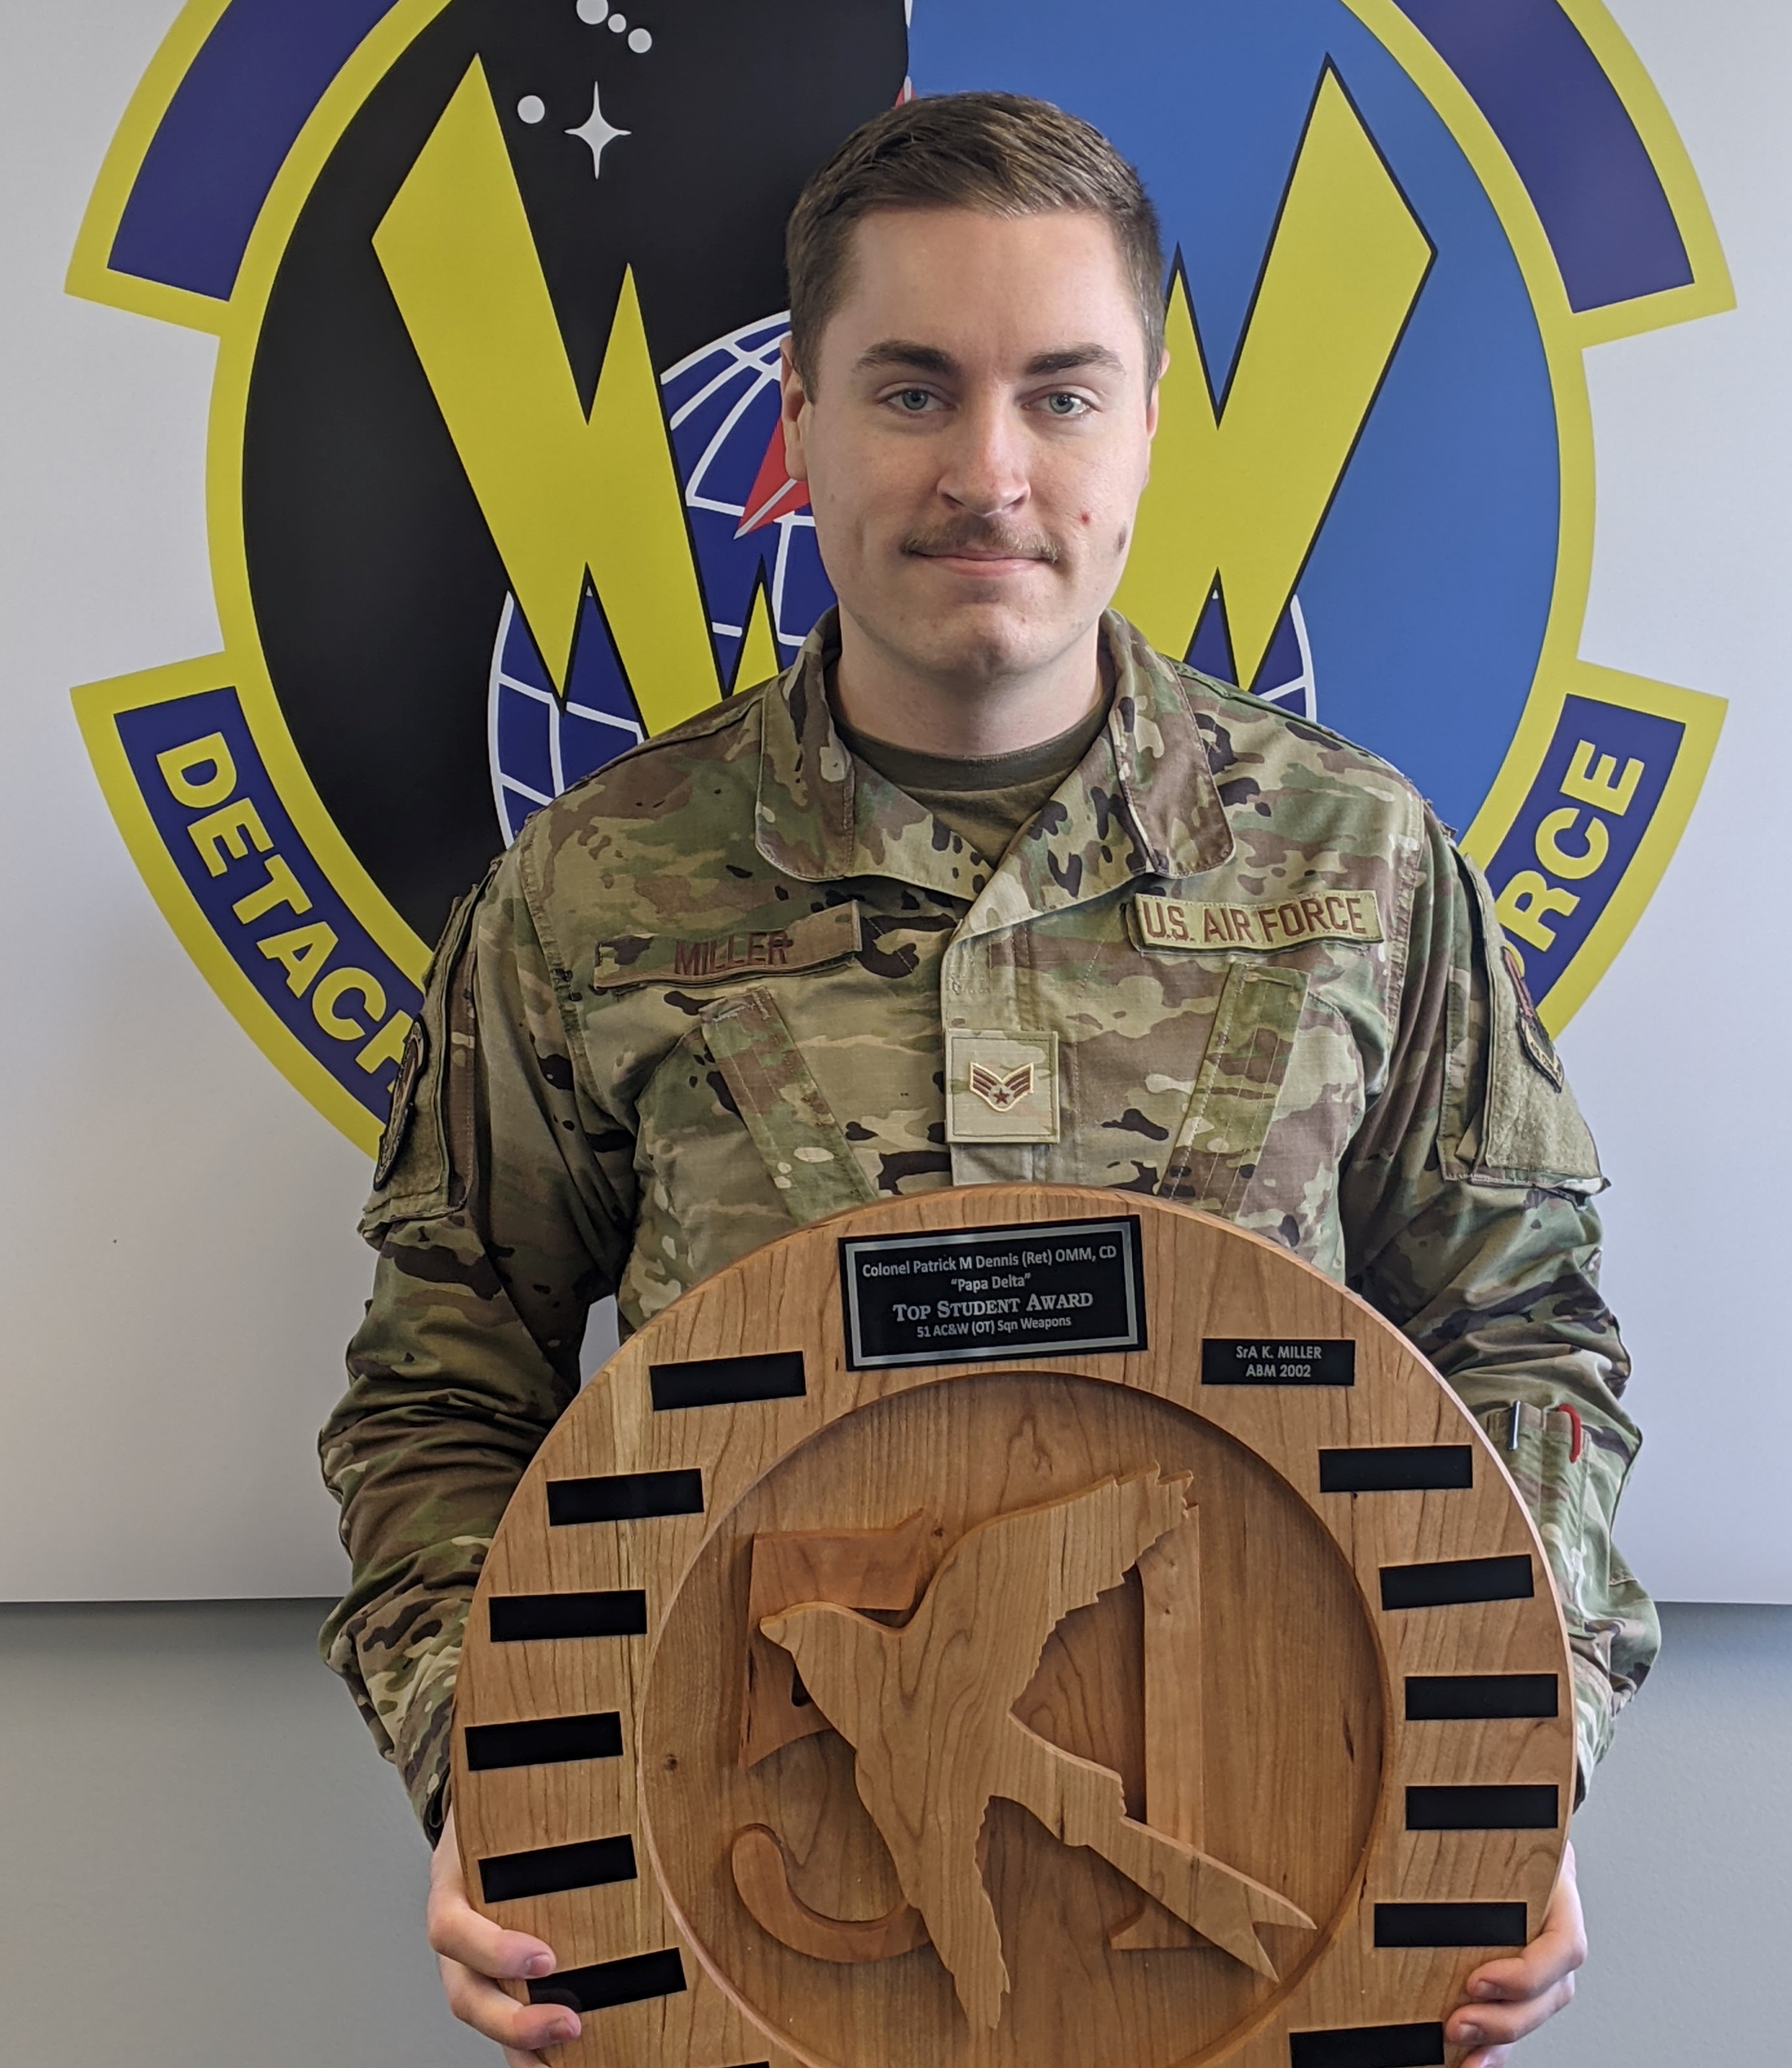 Un homme souriant vêtu d’un uniforme à camouflage tient un prix rond en bois. Sur le mur derrière lui, on voit un gros insigne militaire.